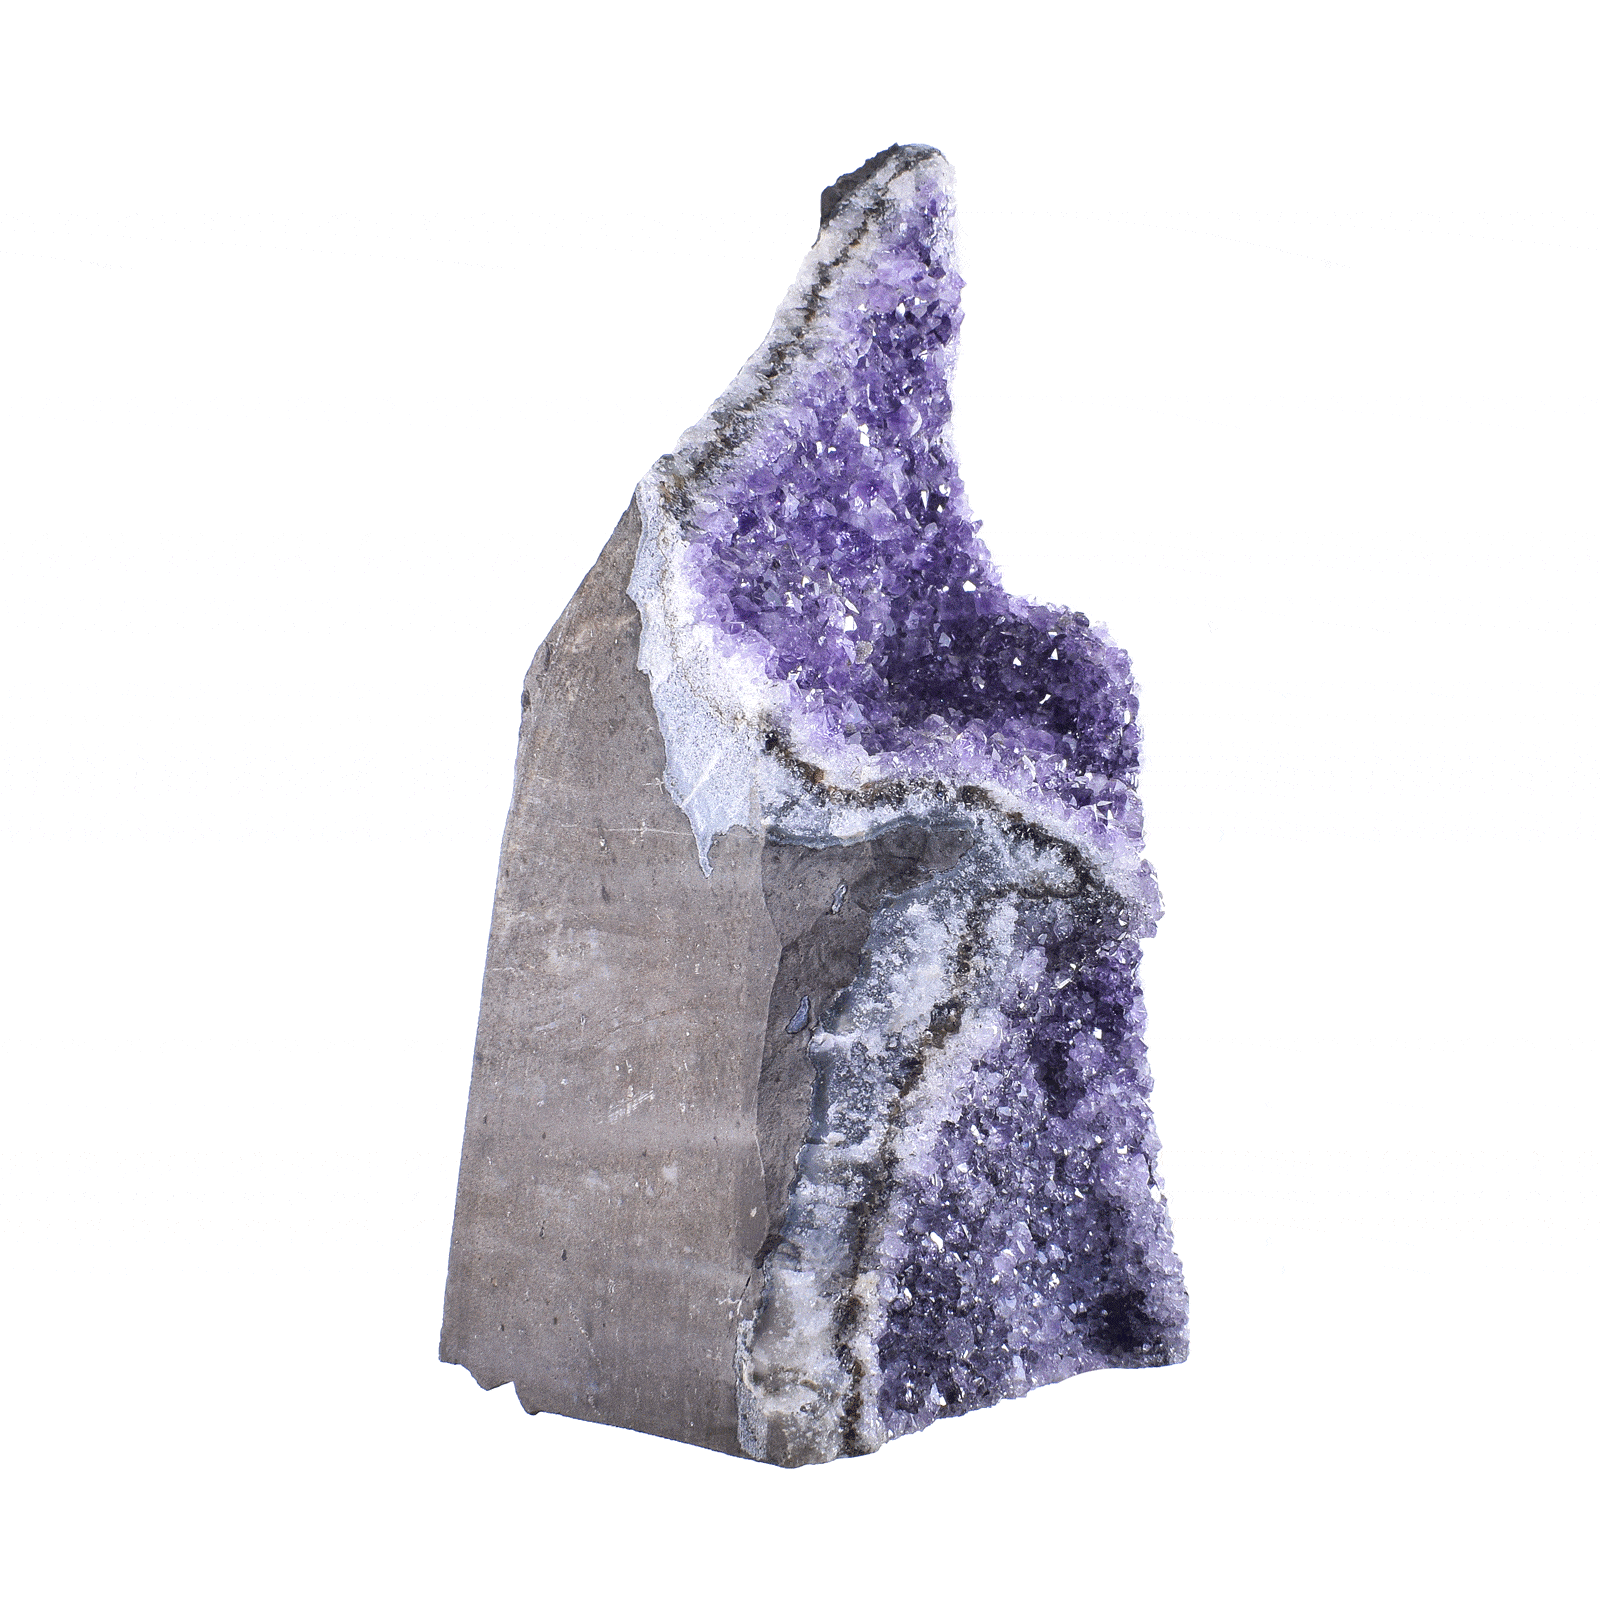 Ακατέργαστο κομμάτι φυσικής πέτρας αμέθυστου με ύψος 24cm. Αγοράστε online shop.